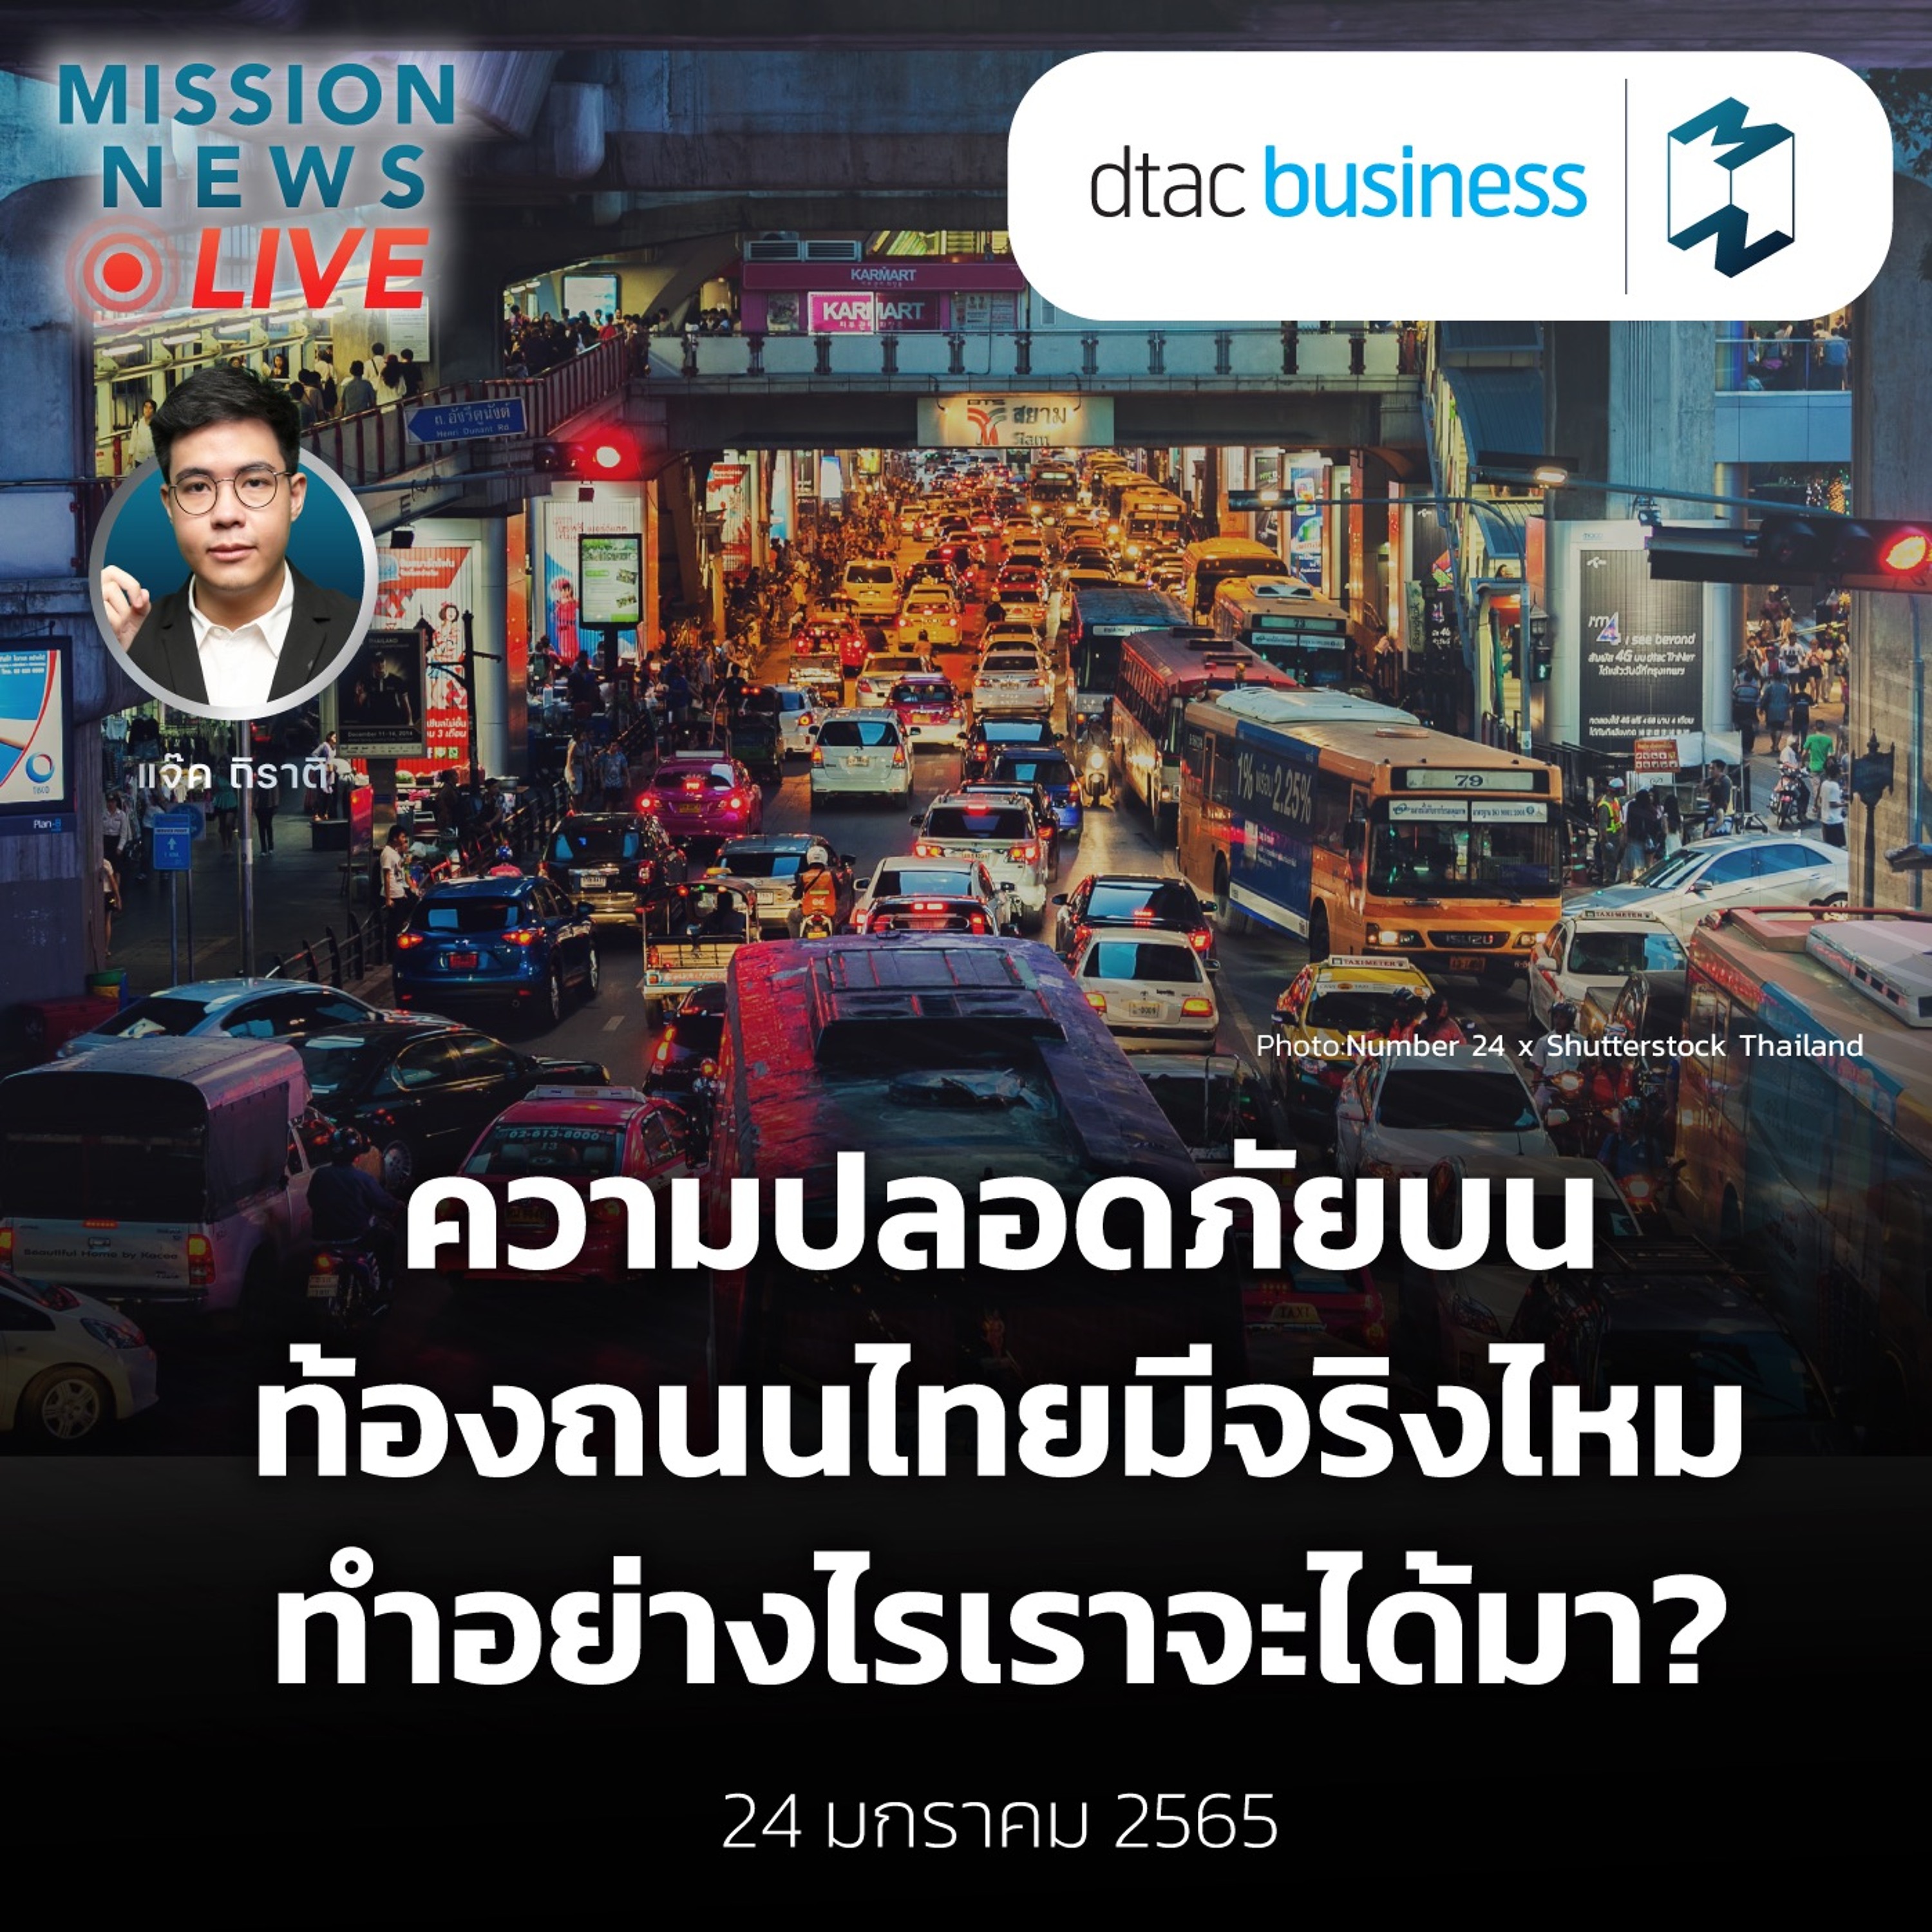 ความปลอดภัยบนท้องถนนไทยมีจริงไหม...ทำอย่างไรเราจะได้มา?| Mission News Live! 24 ม.ค. 2022